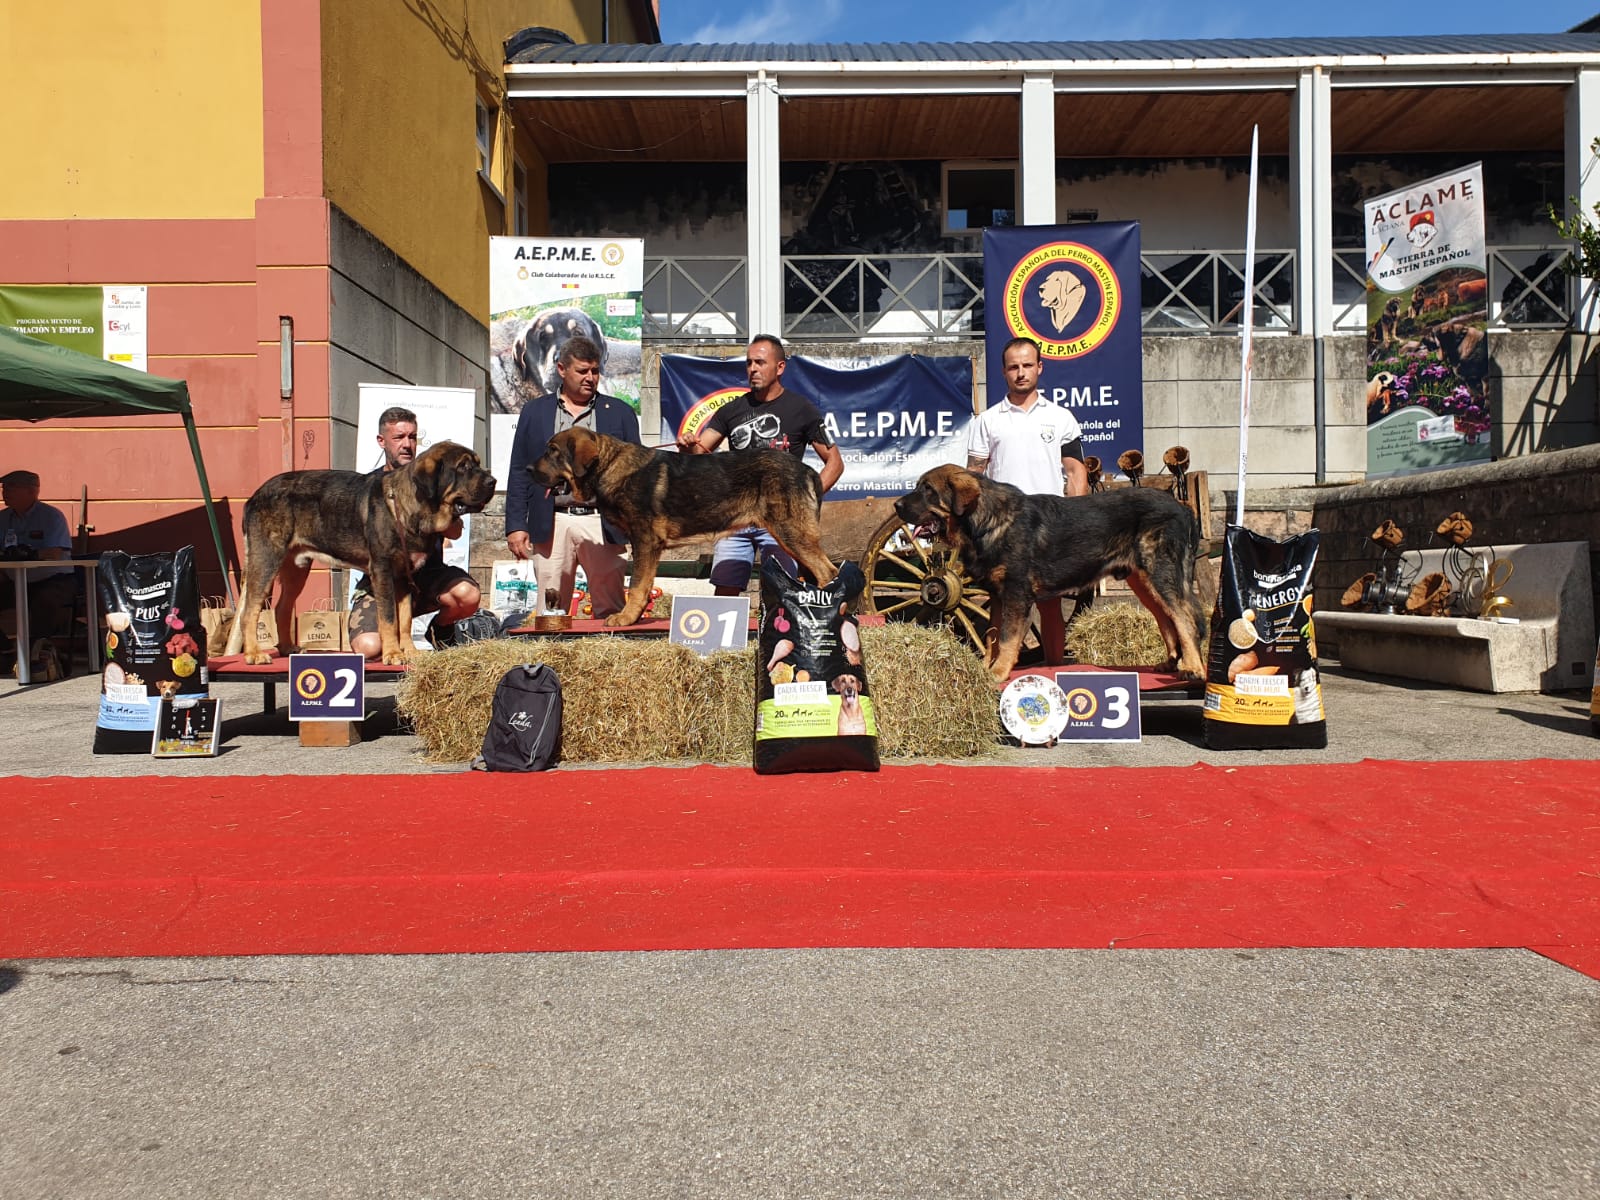 El X Concurso Monográfico de Mastín Español se celebra en Villablino con la flor y nata de esta raza de pastoreo